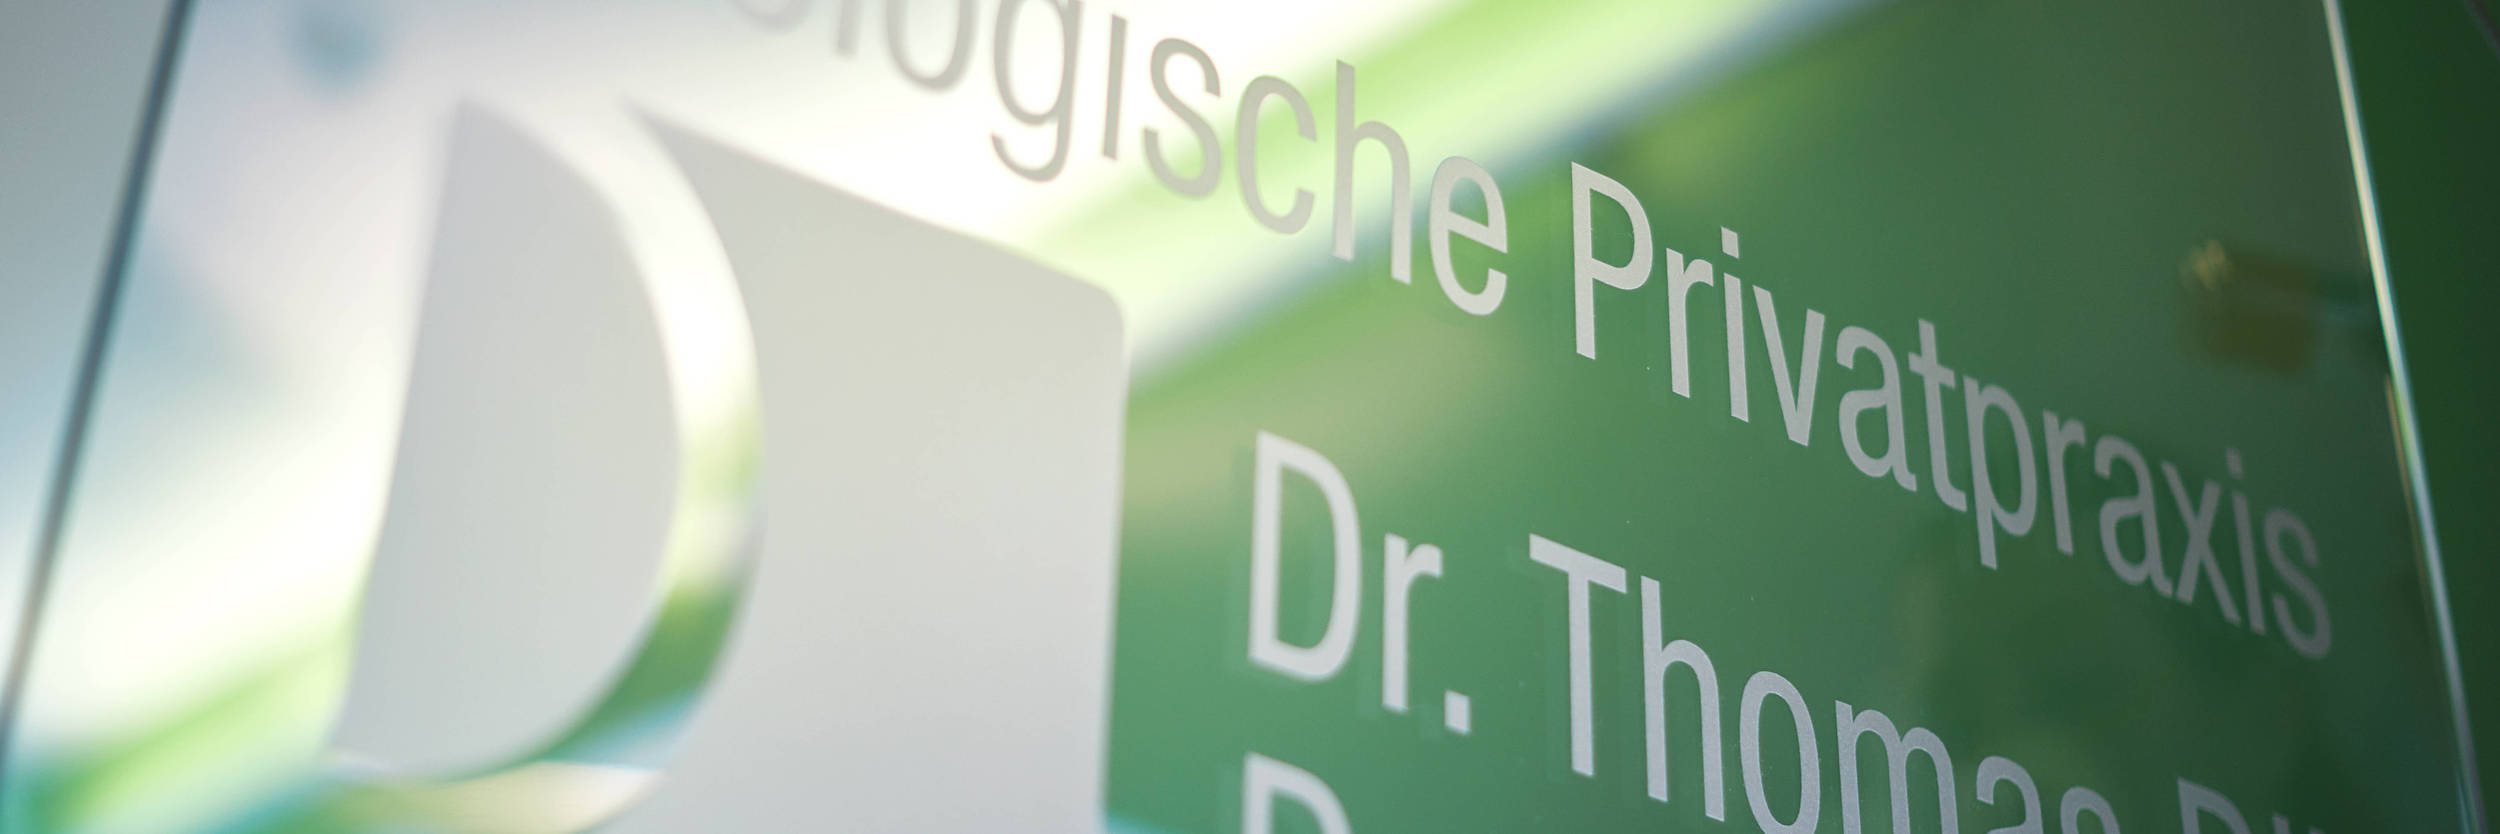 Praxisschild der Urologischen Privatpraxis Heidelberg